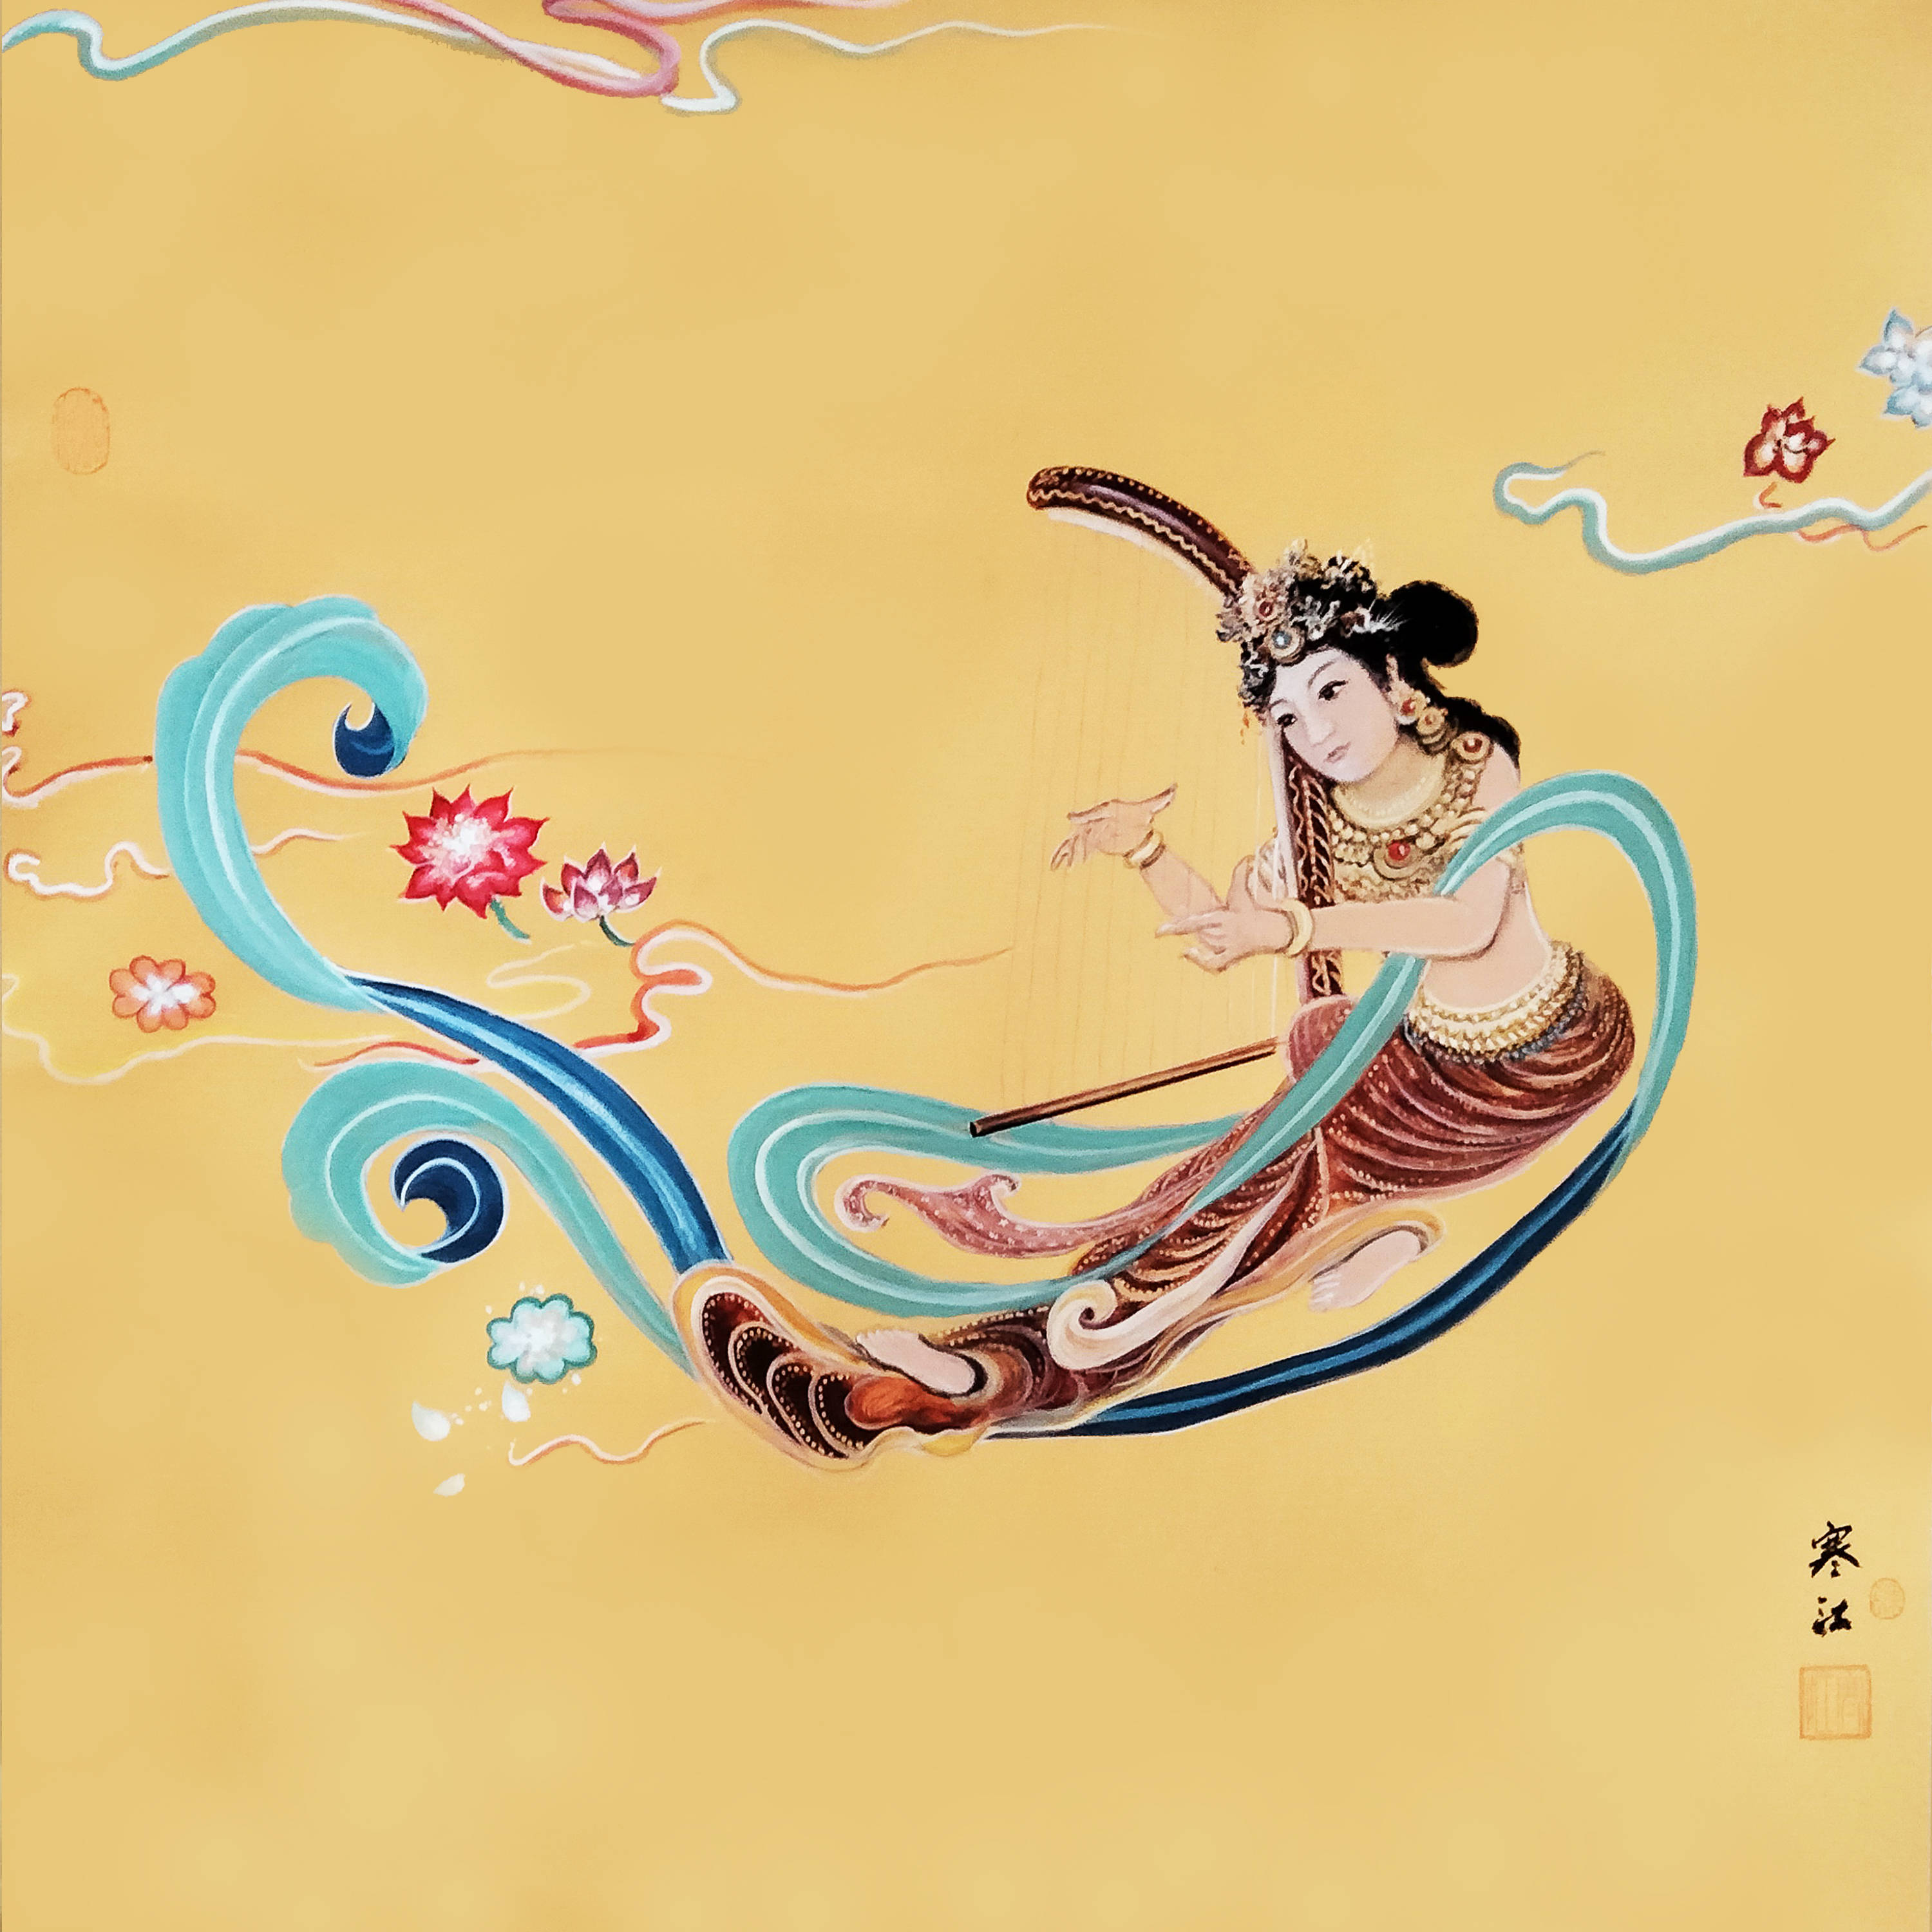 界画寒江———工笔神仙人物《箜篌飞天》